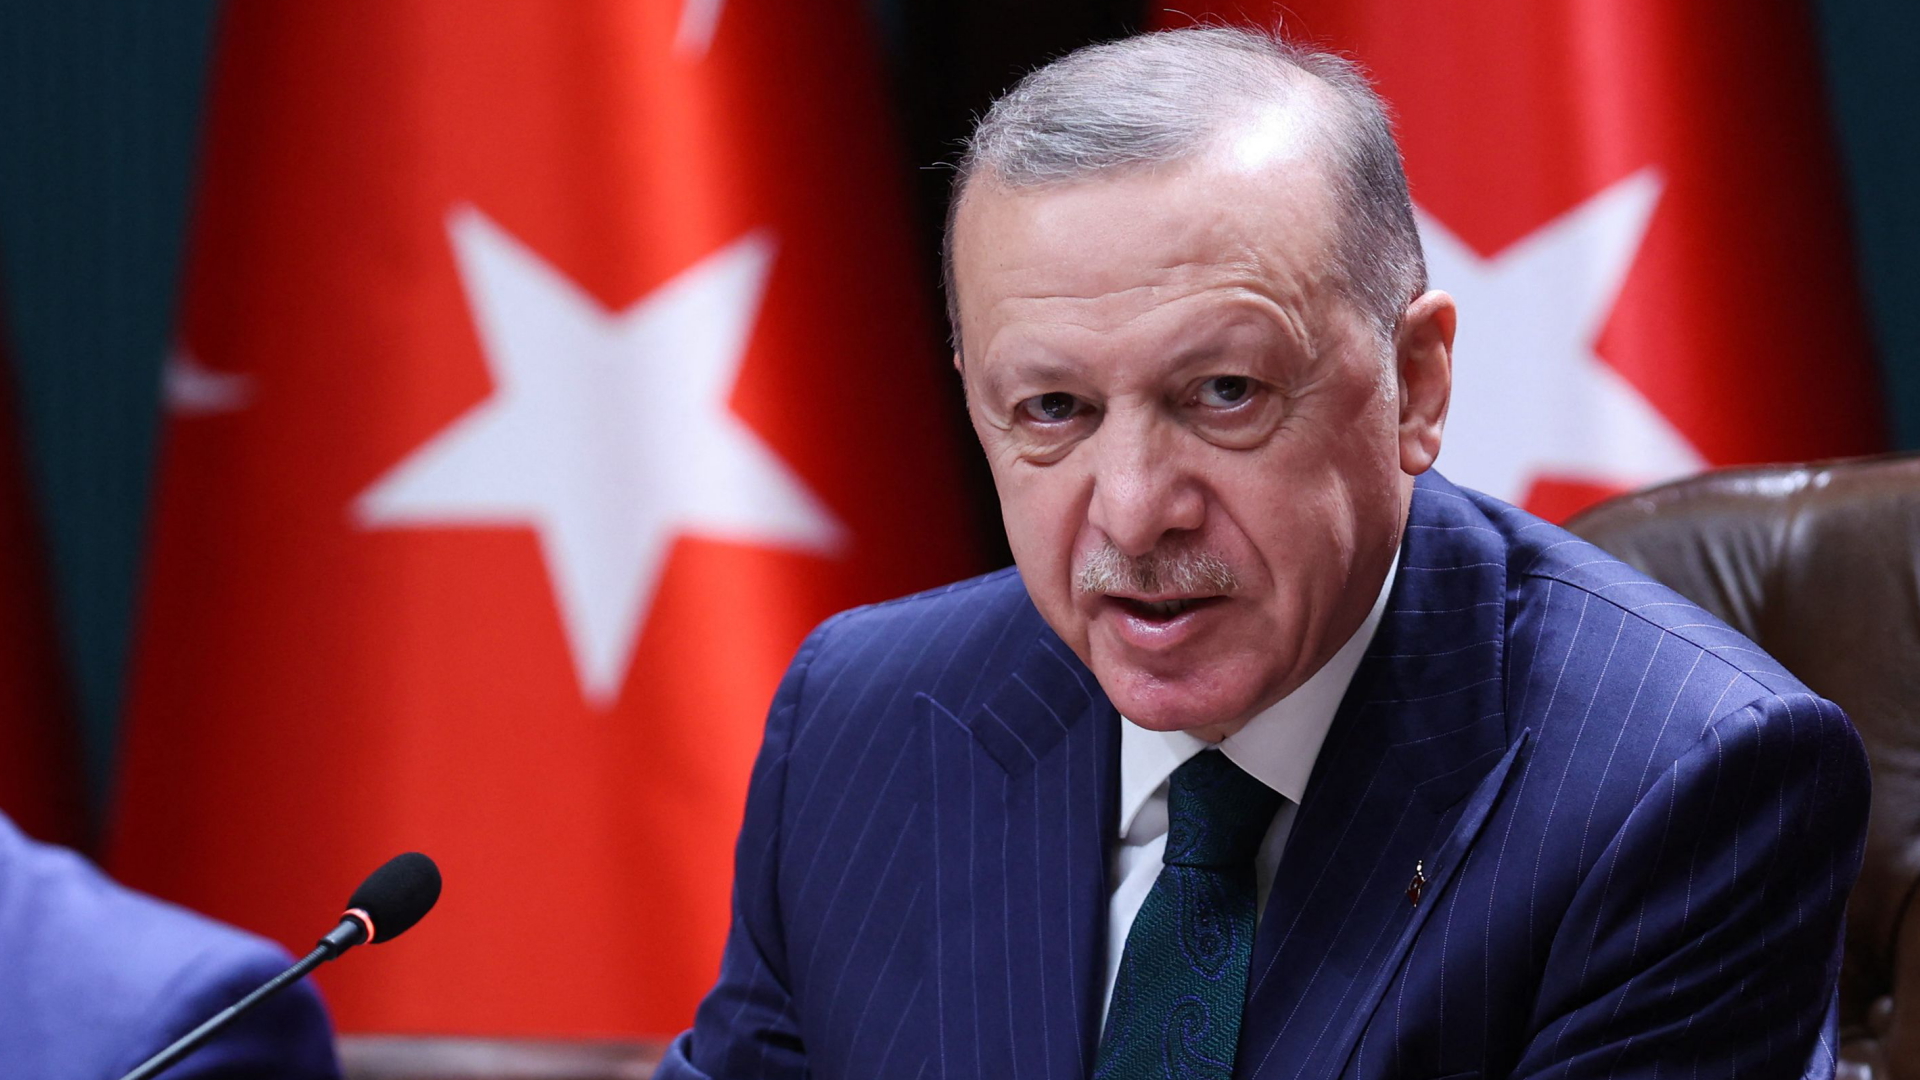 Der türkische Präsident Erdogan spricht bei einer Pressekonferenz | AFP